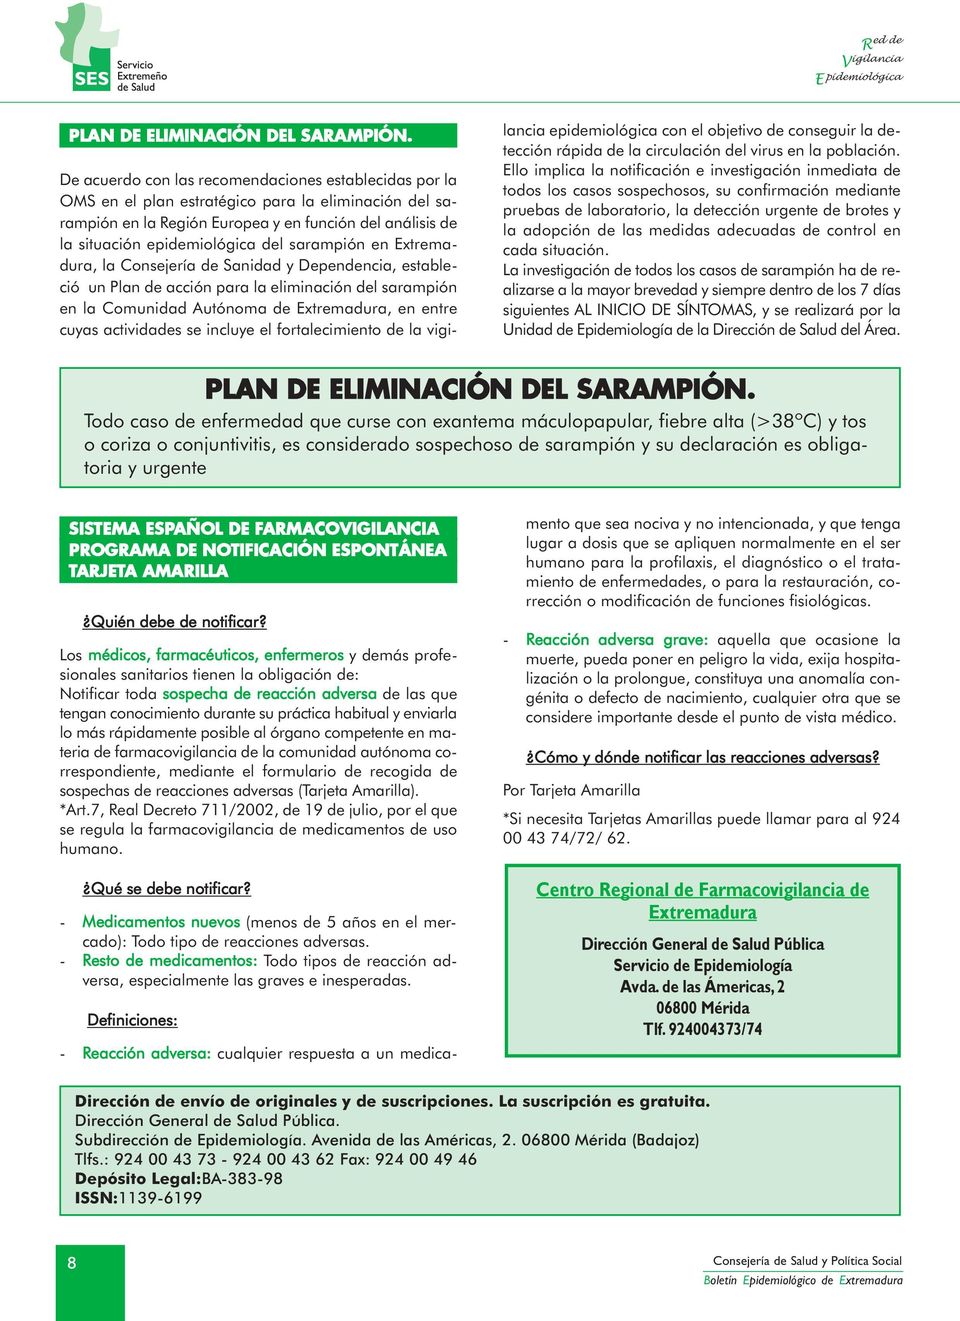 sarampión en Extremadura, la Consejería de Sanidad y Dependencia, estableció un Plan de acción para la eliminación del sarampión en la Comunidad Autónoma de Extremadura, en entre cuyas actividades se